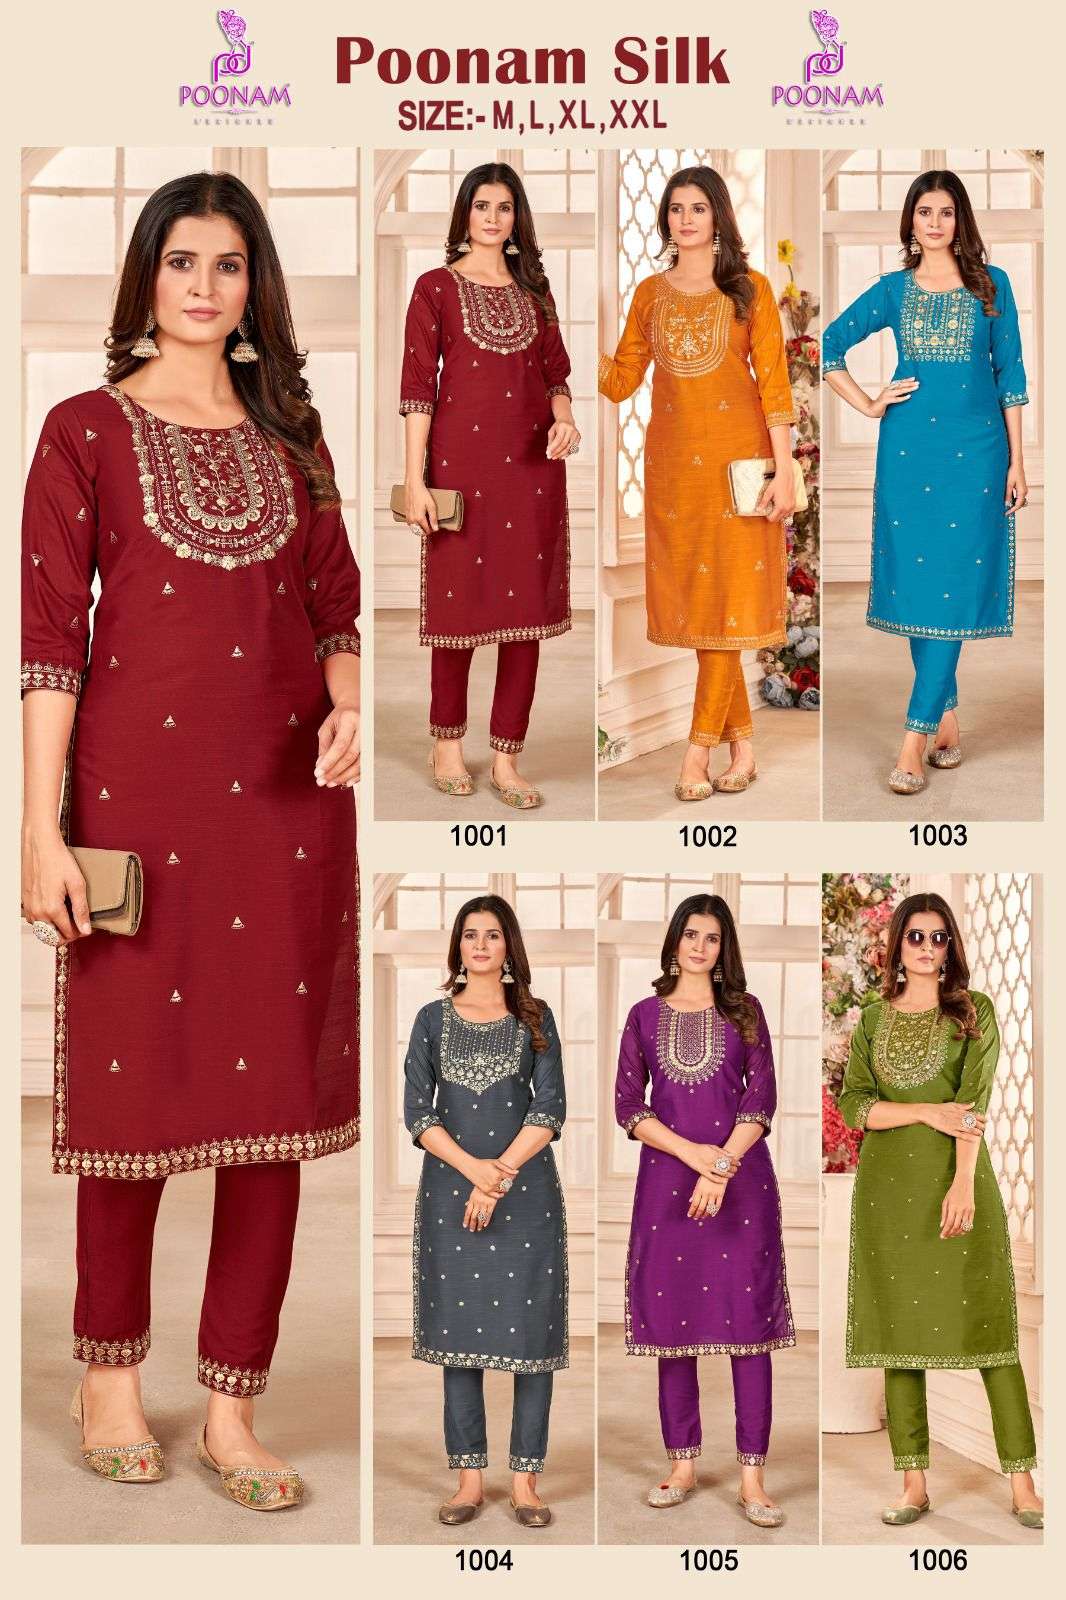 poonam designer poonam silk 1001-1006 series cotton silk designer kurtis catalogue online surat